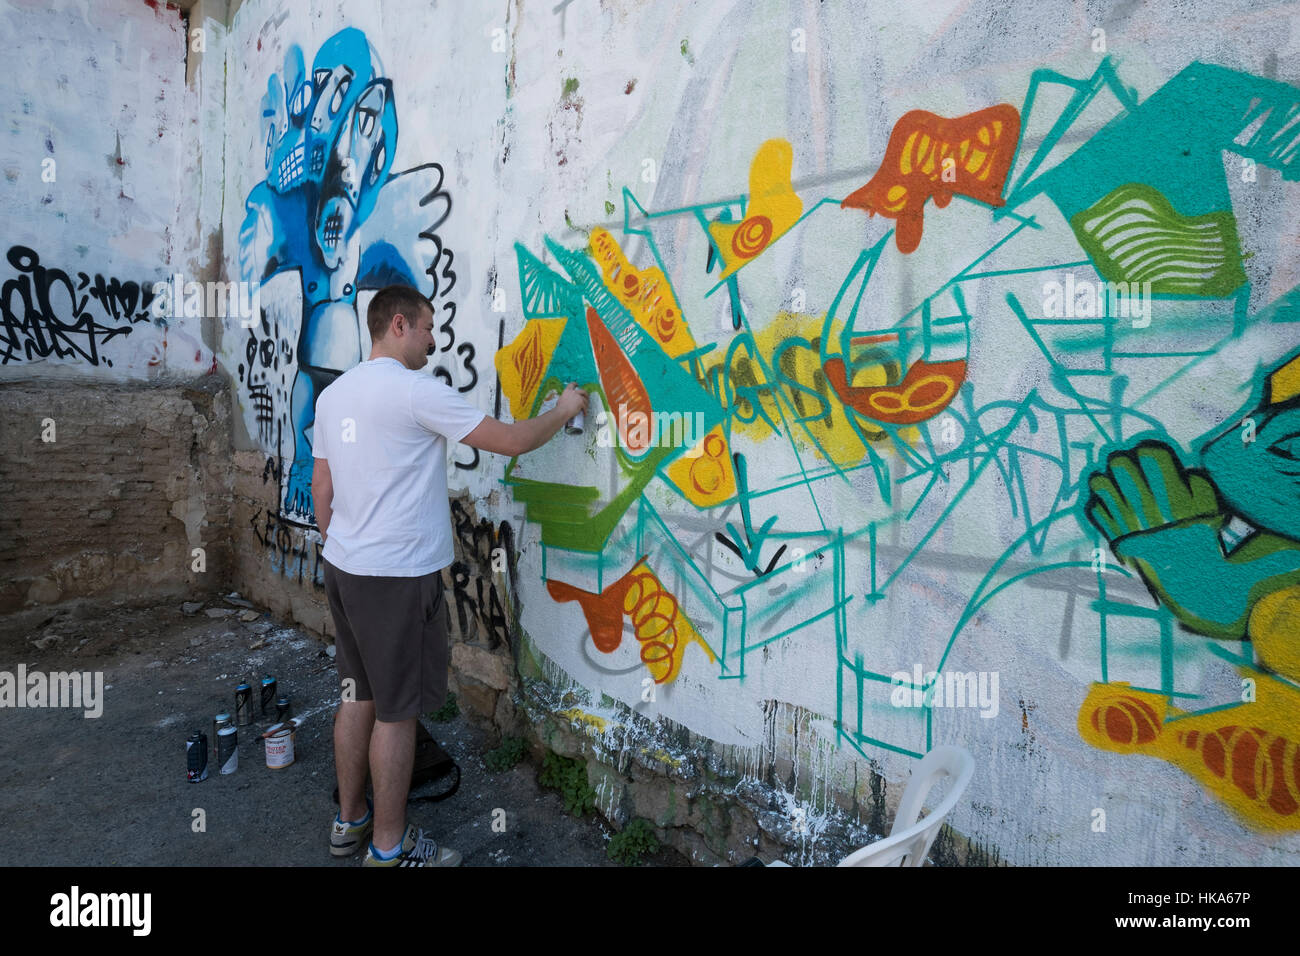 A man painting graffiti on the wall, Limassol, Cyprus. Stock Photo